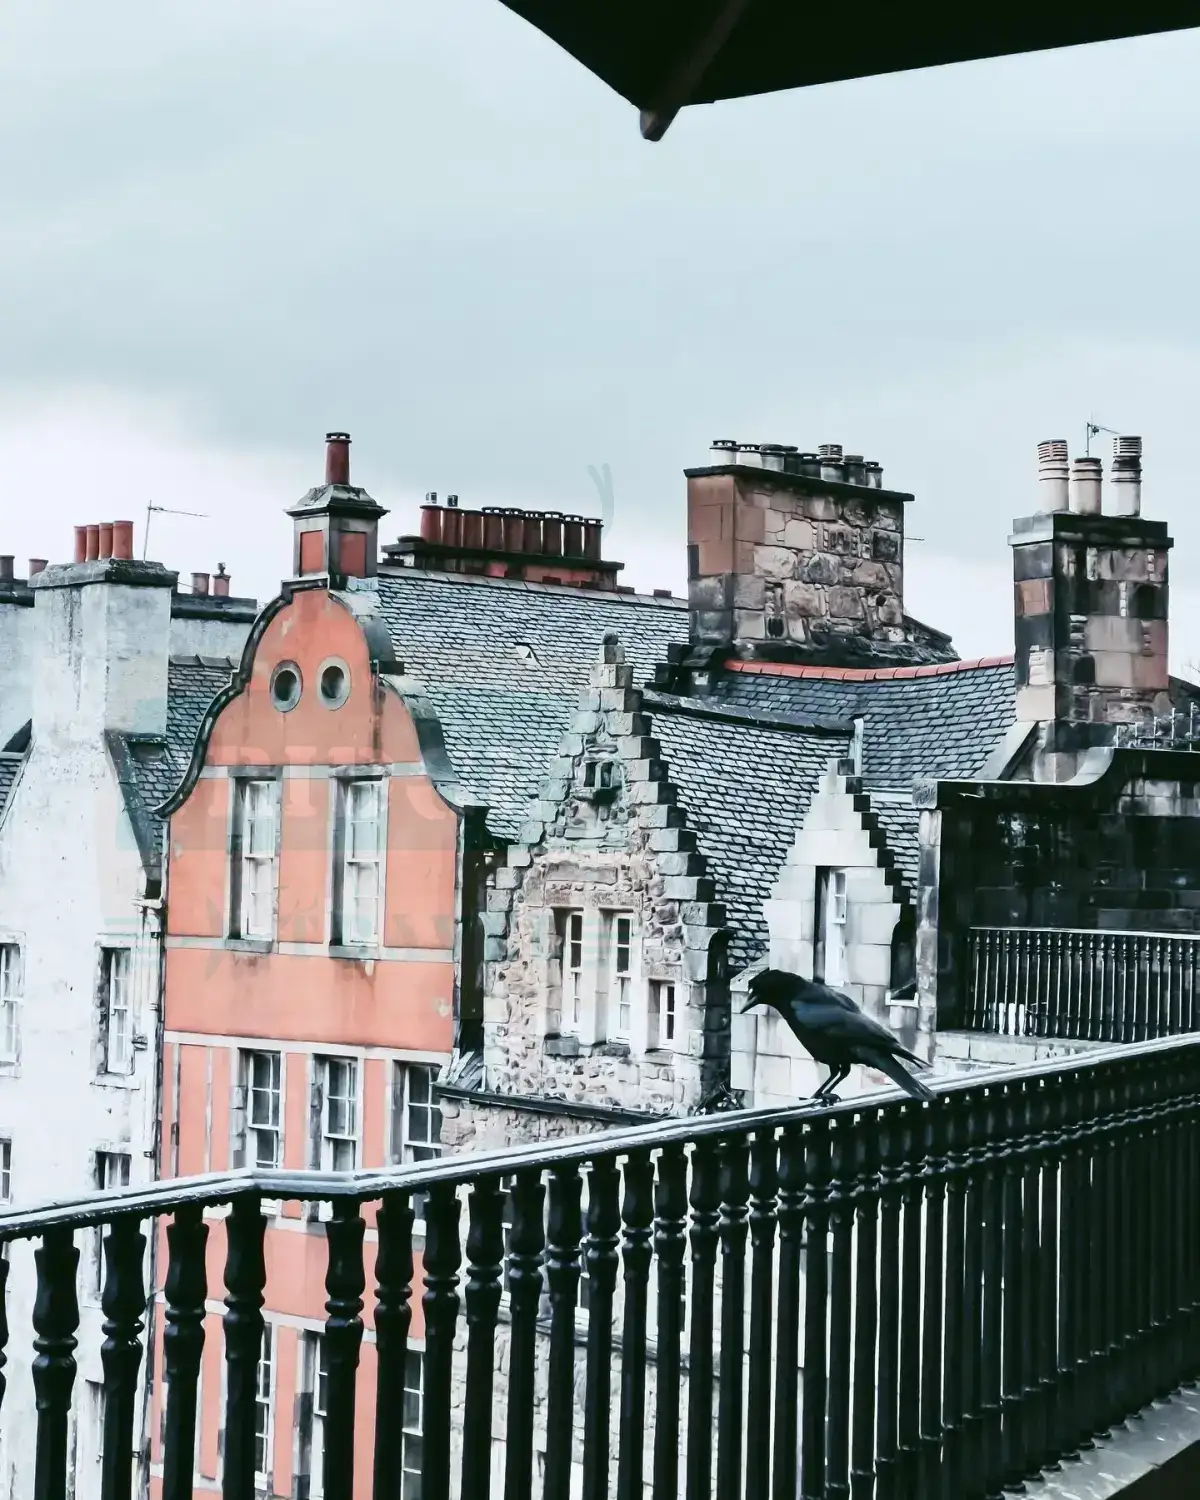 Victoria Street, Edynburg, Szkocja. Widok z górnej kondygnacji, na barierce stoi kruk.